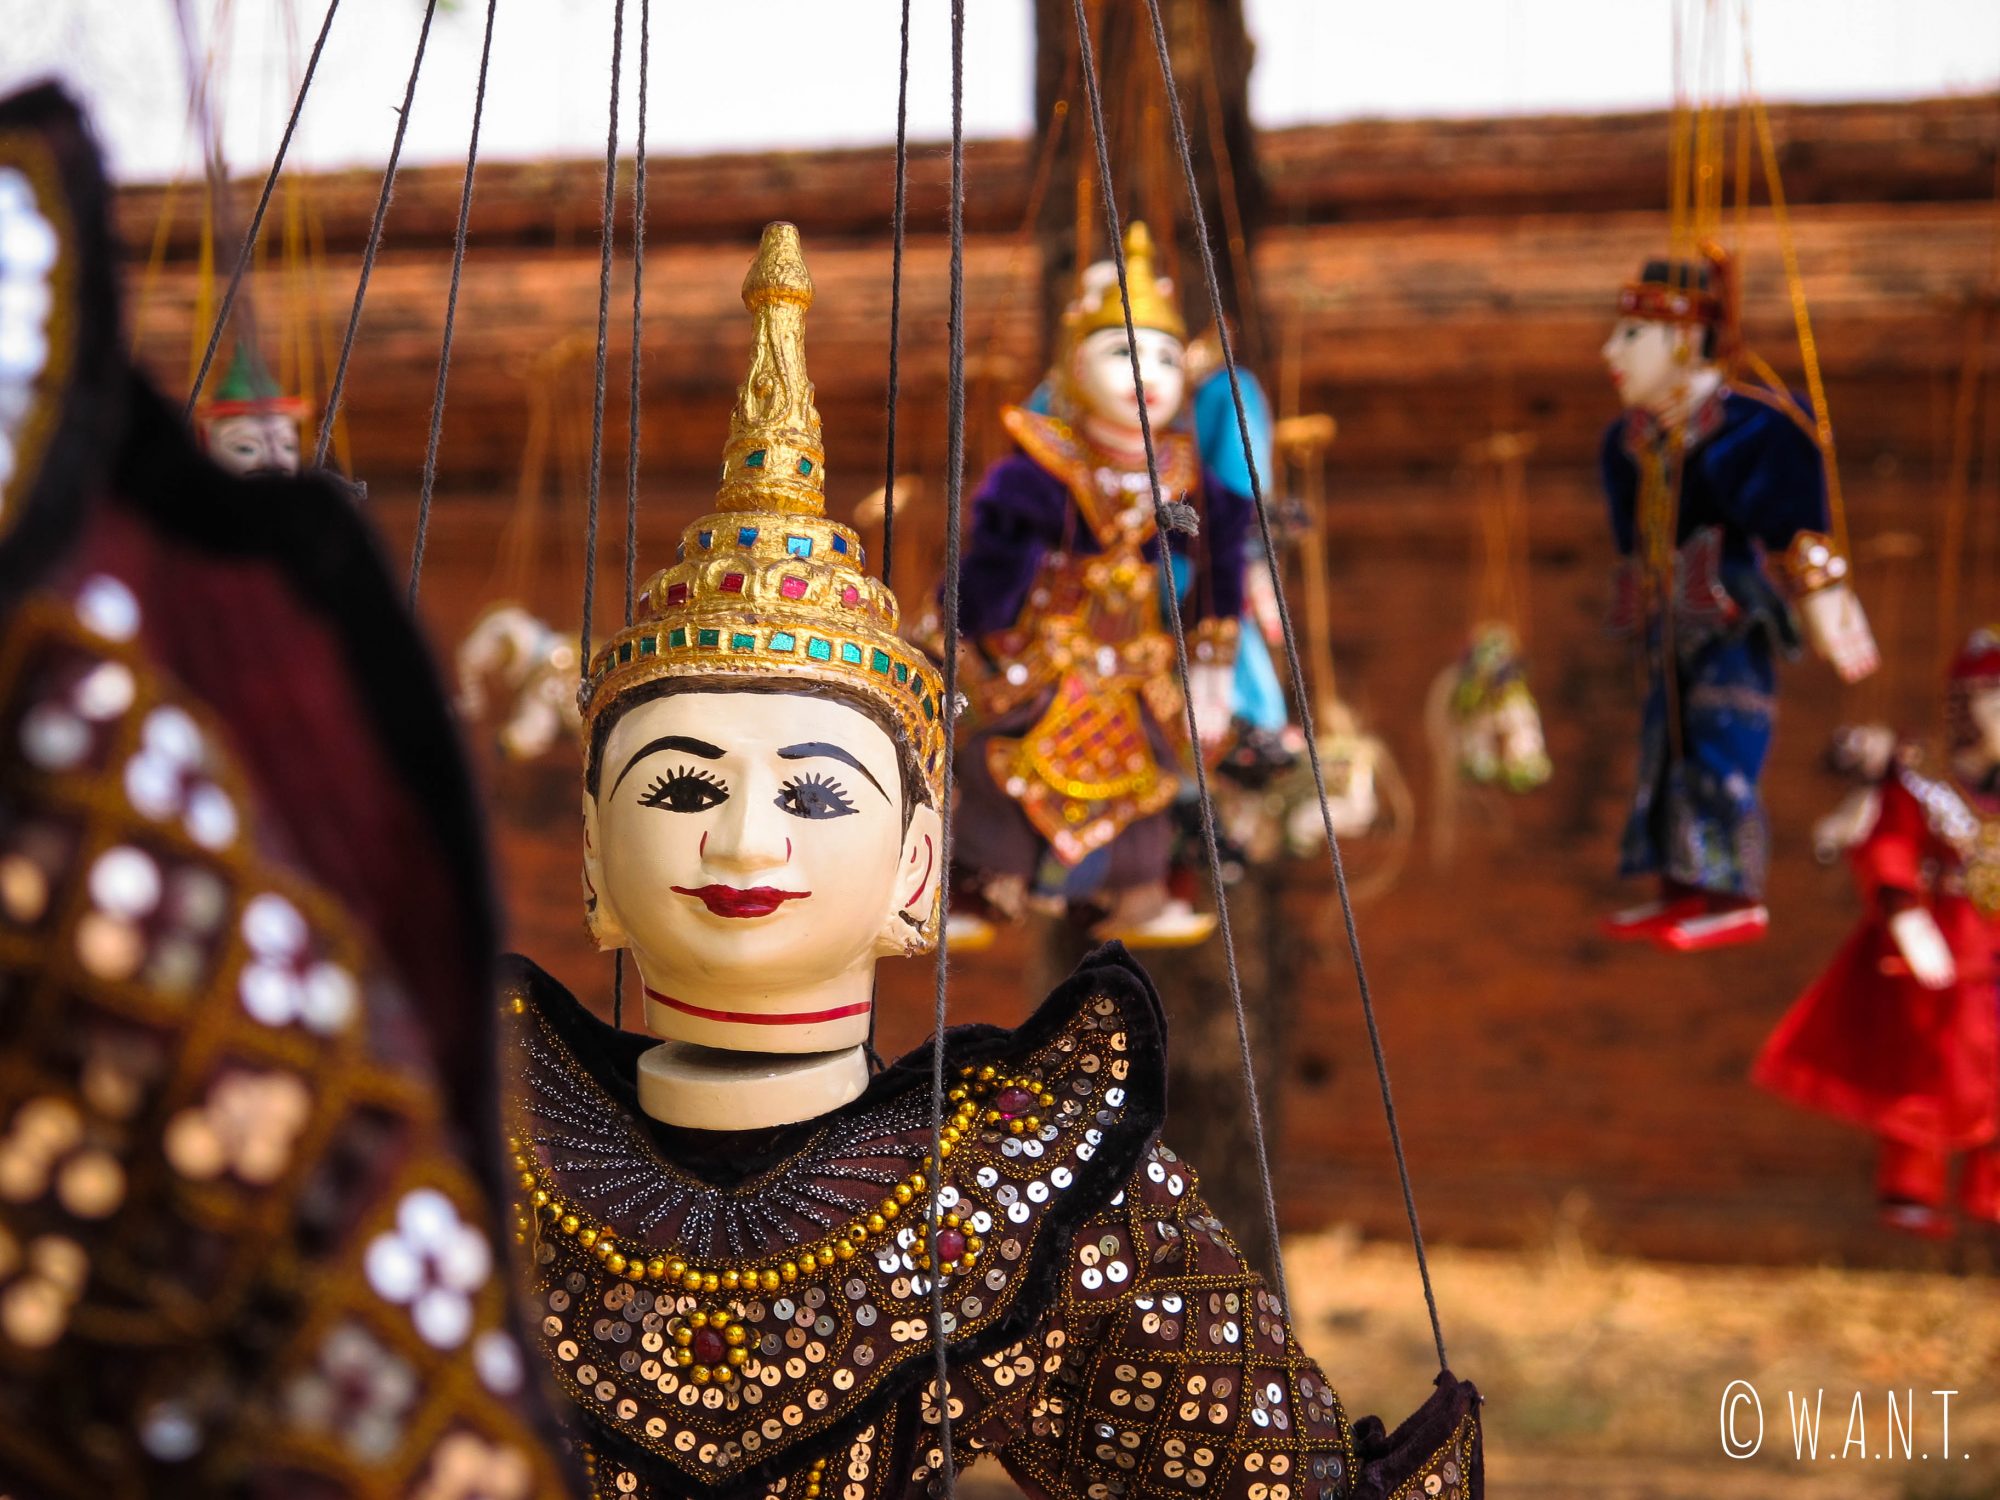 Les marionnettes occupent une place importante dans la culture birmane